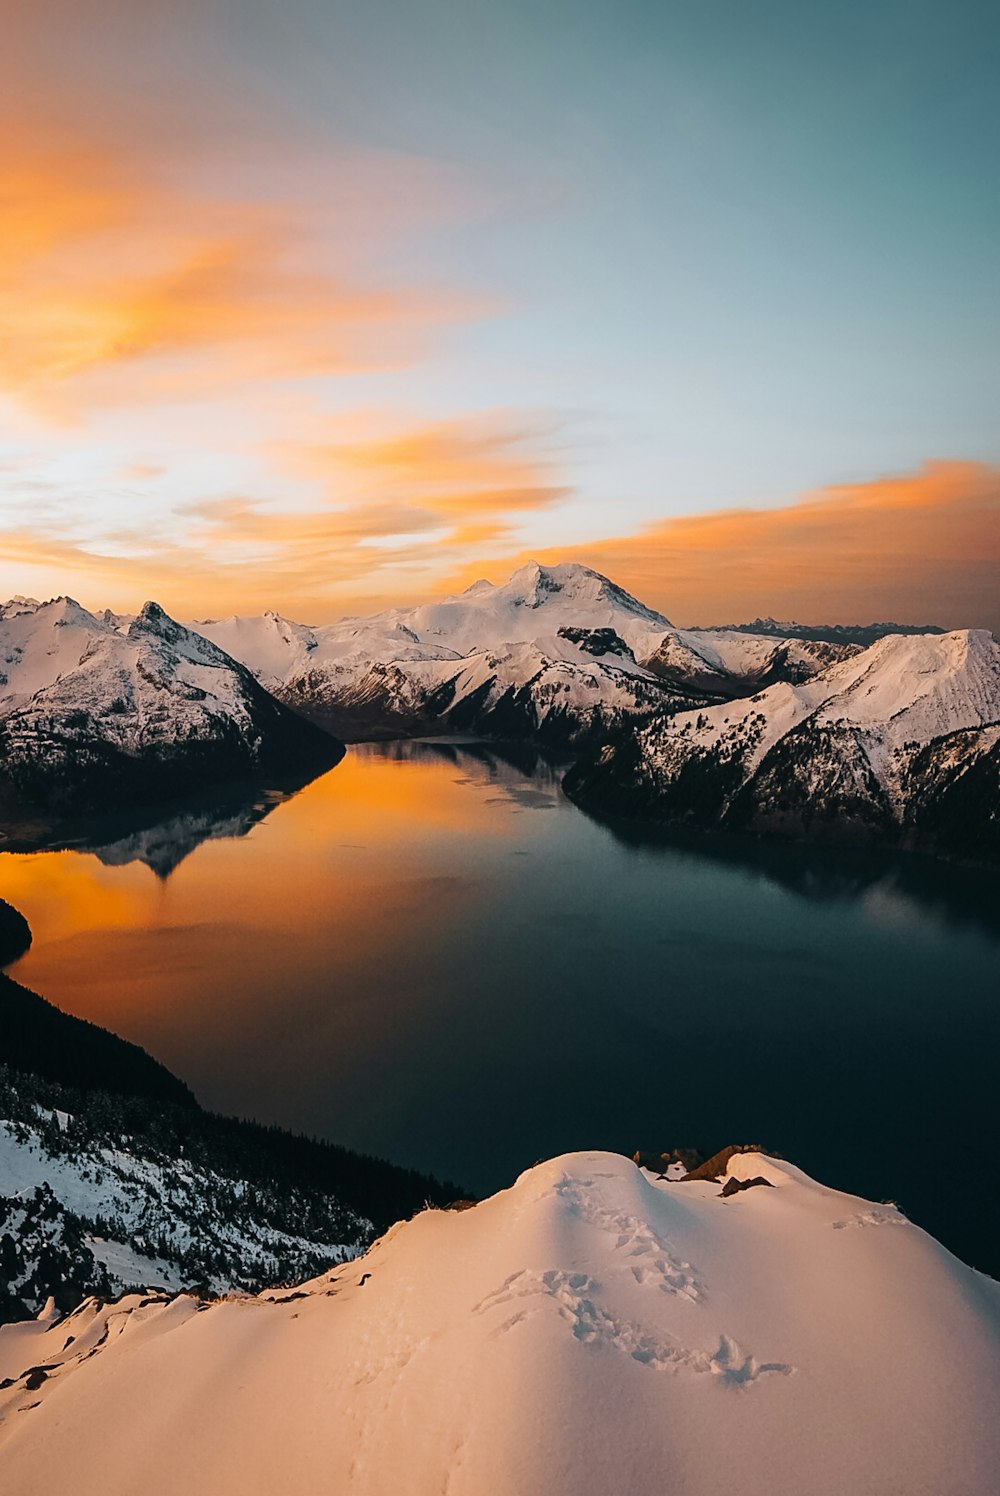 uma vista de um lago cercado por montanhas cobertas de neve